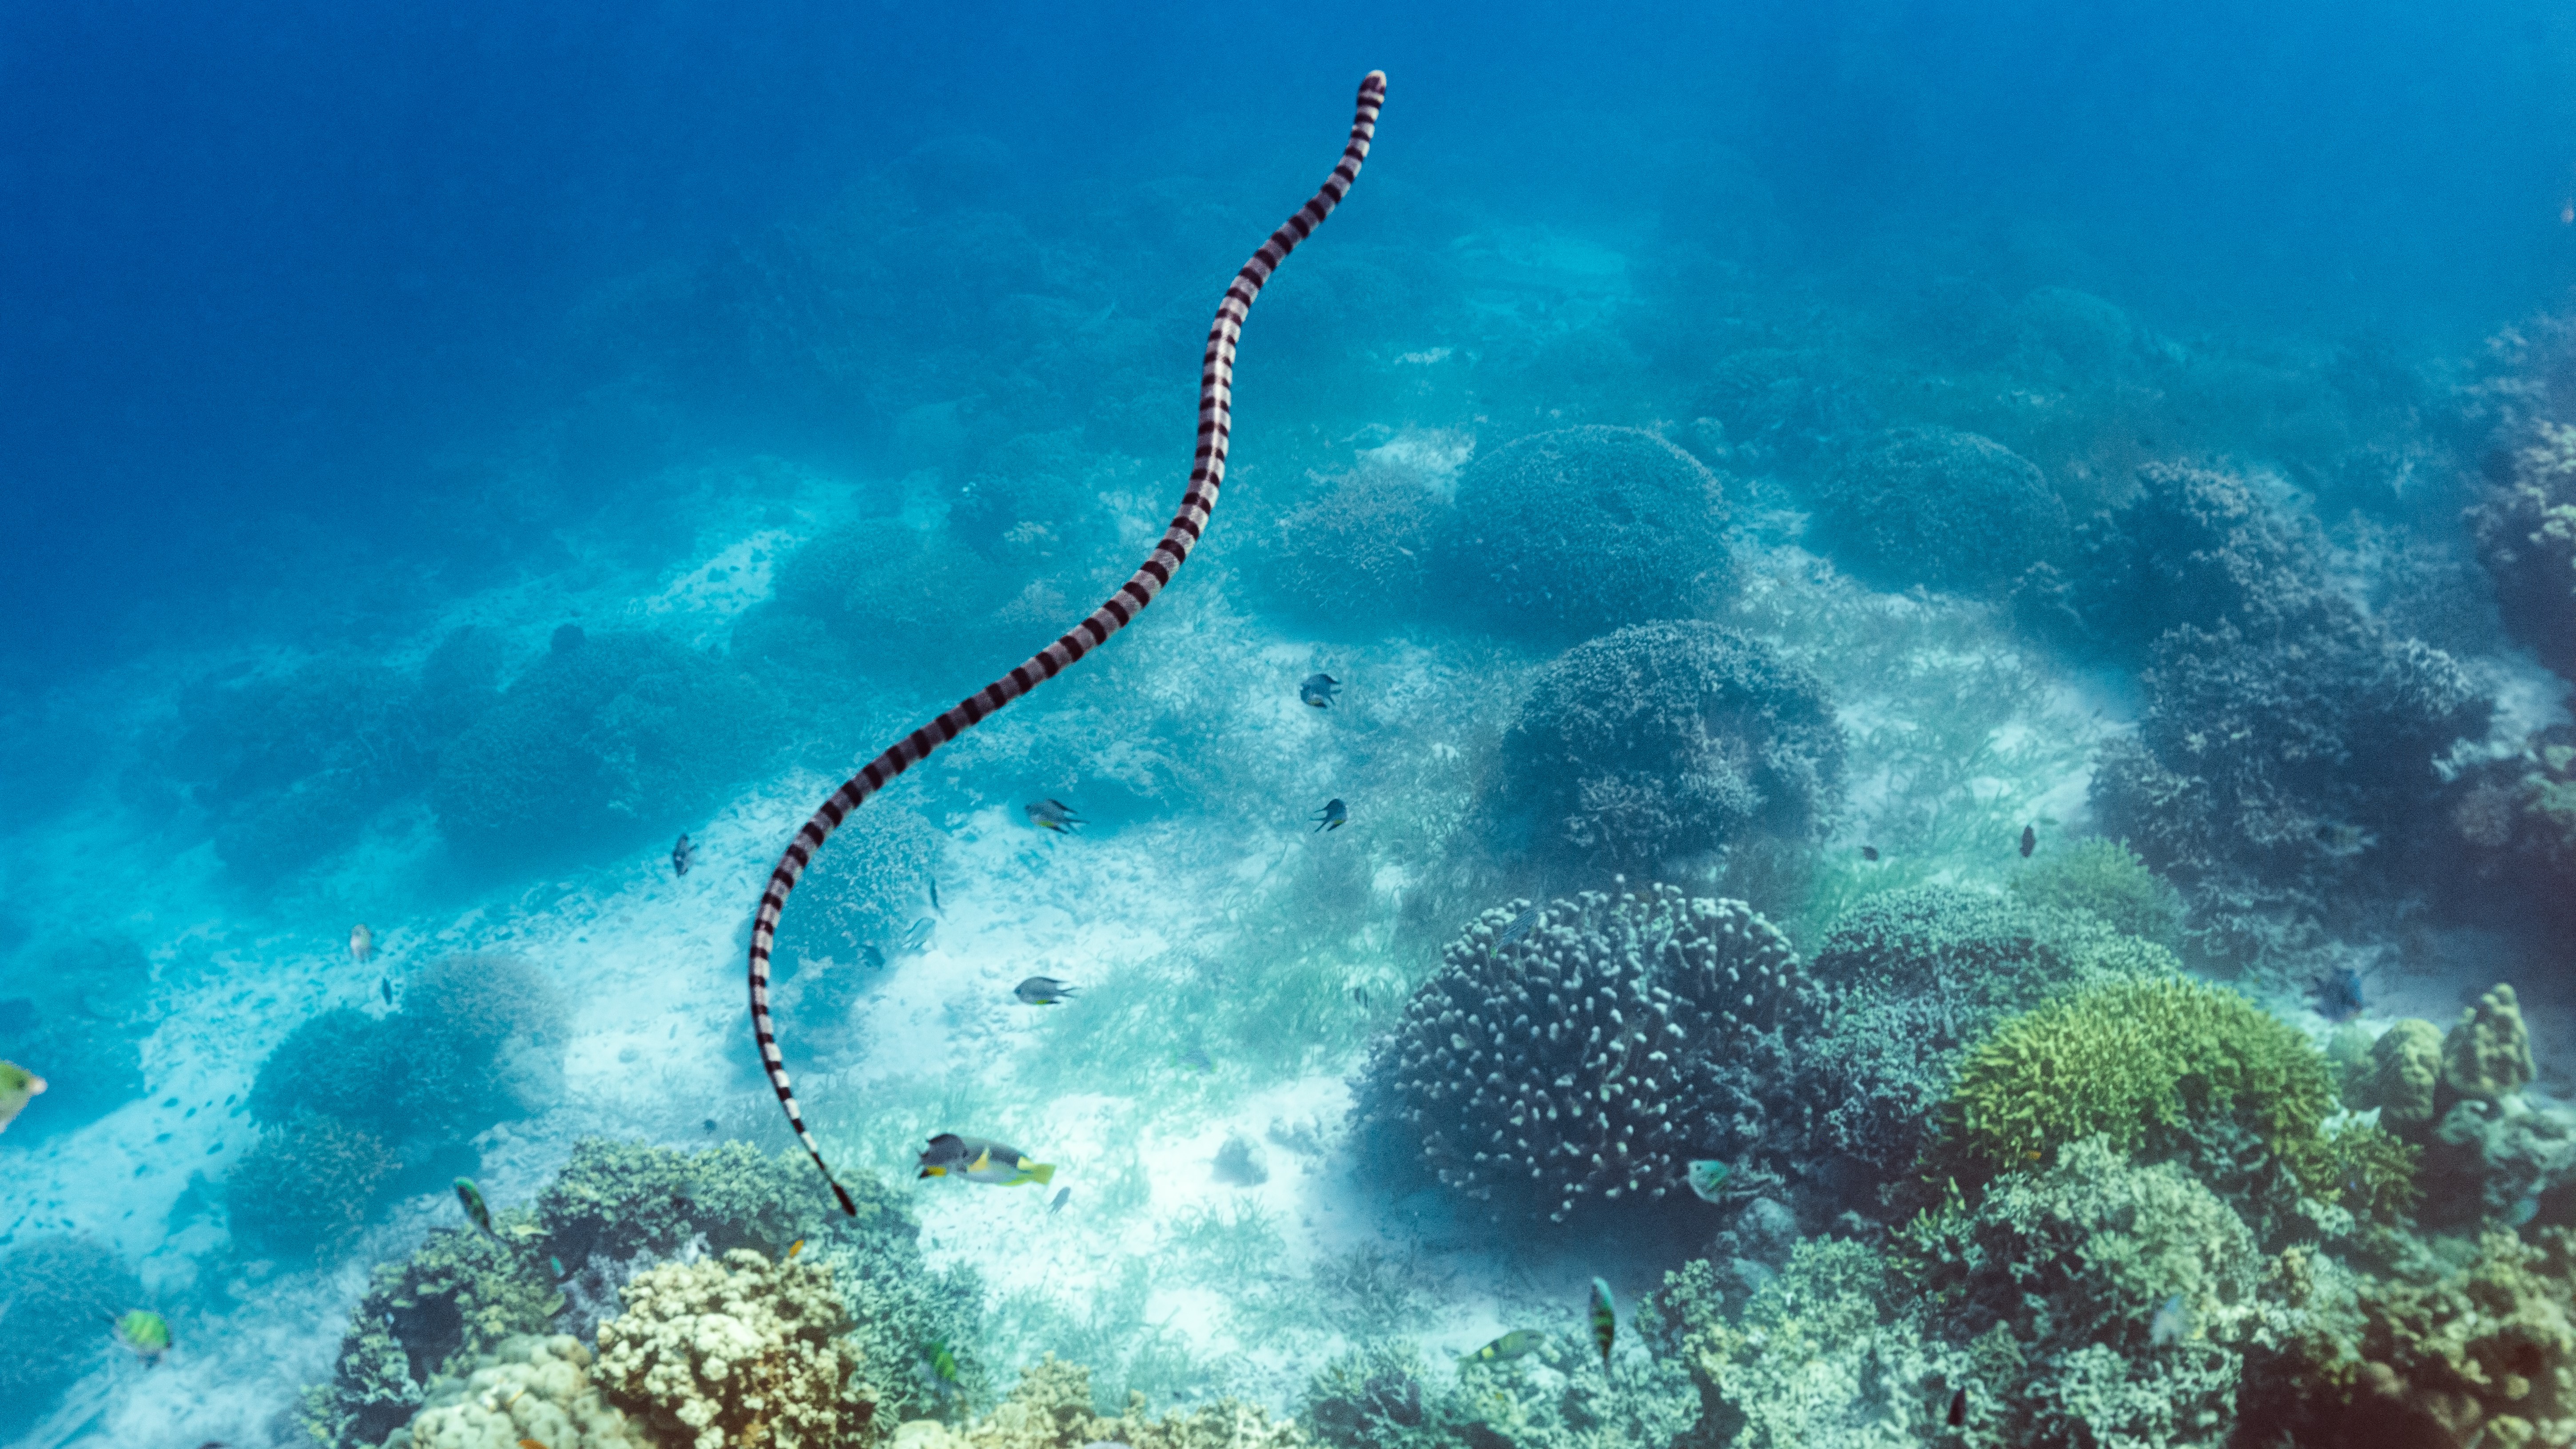 Una serpiente marina nadando en aguas cristalinas con corales debajo